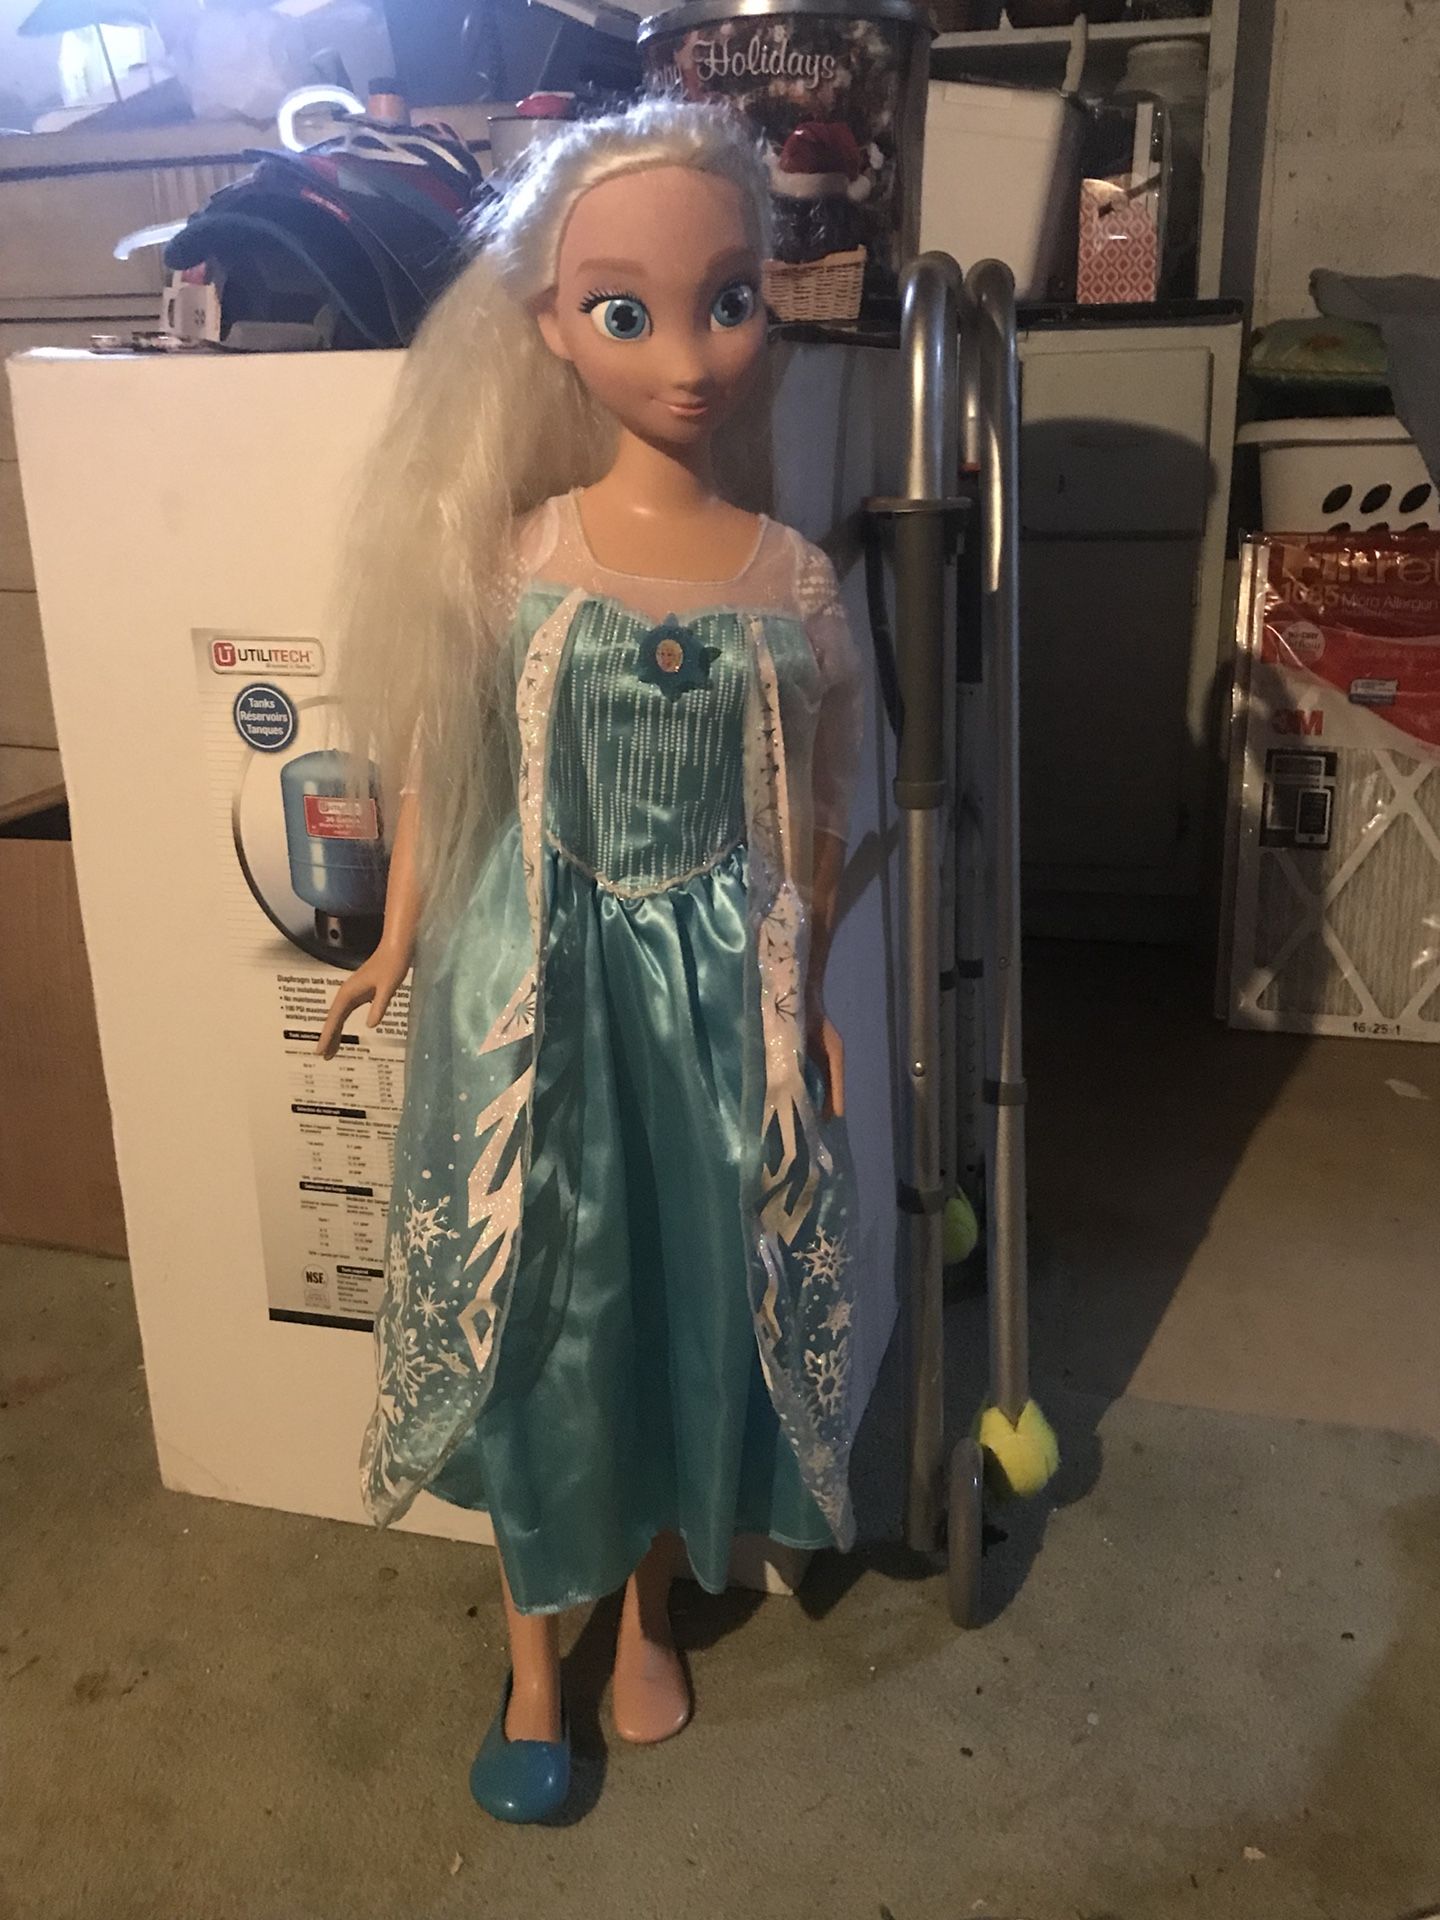 4ft tall Elsa